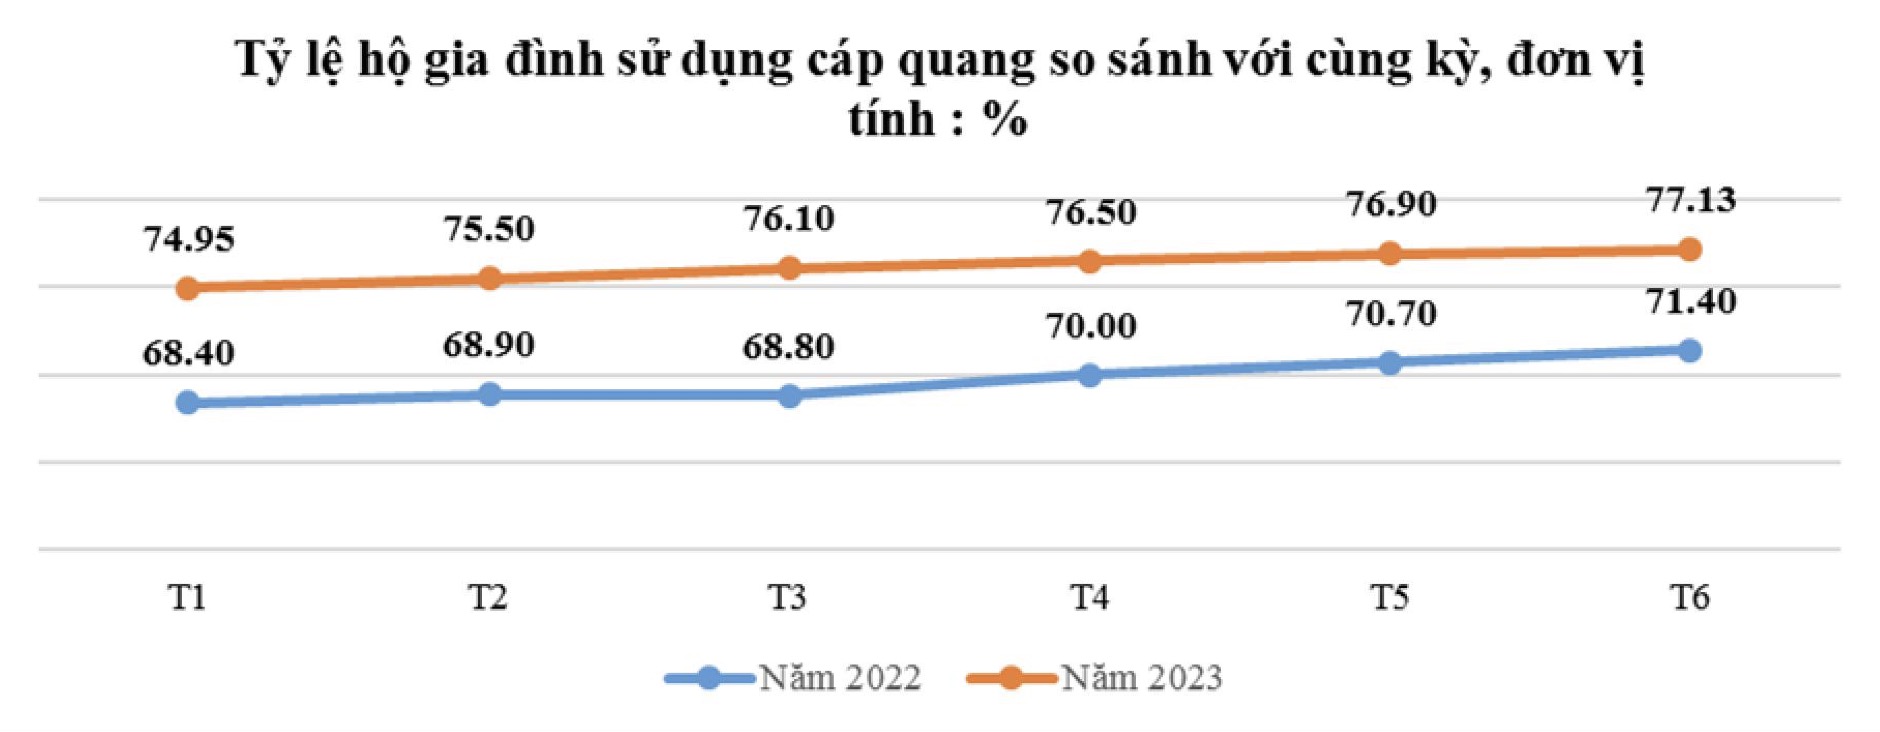 Lượng người dùng Internet ở Việt Nam đang tăng ngoài dự báo